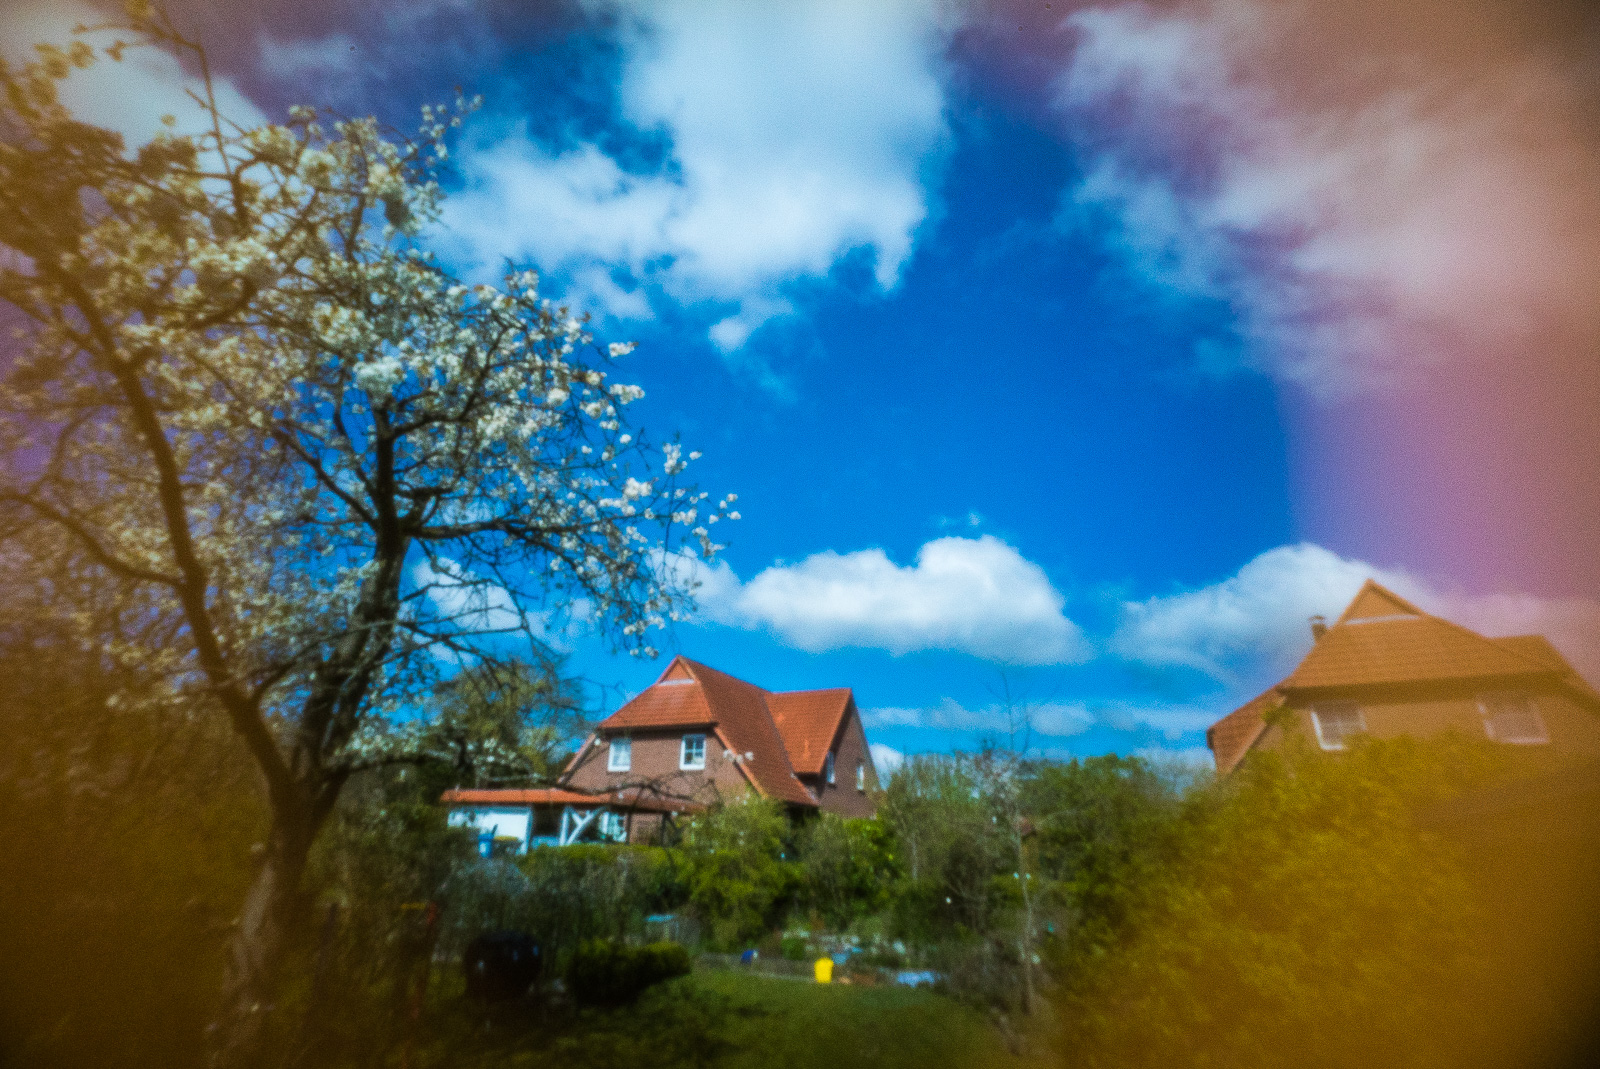 Blick in einen Garten unter leicht bewölktem blauem Himmel. Links ein blühender Kirschbaum, mittig und rechts zwei geklinkerte, rot gedeckte Häuser. Kräftige kreisförmige Abschattung und Farbverschiebung zu den Rändern hin (das Bild ist durch ein Loch, ohne Objektiv, aufgenommen)